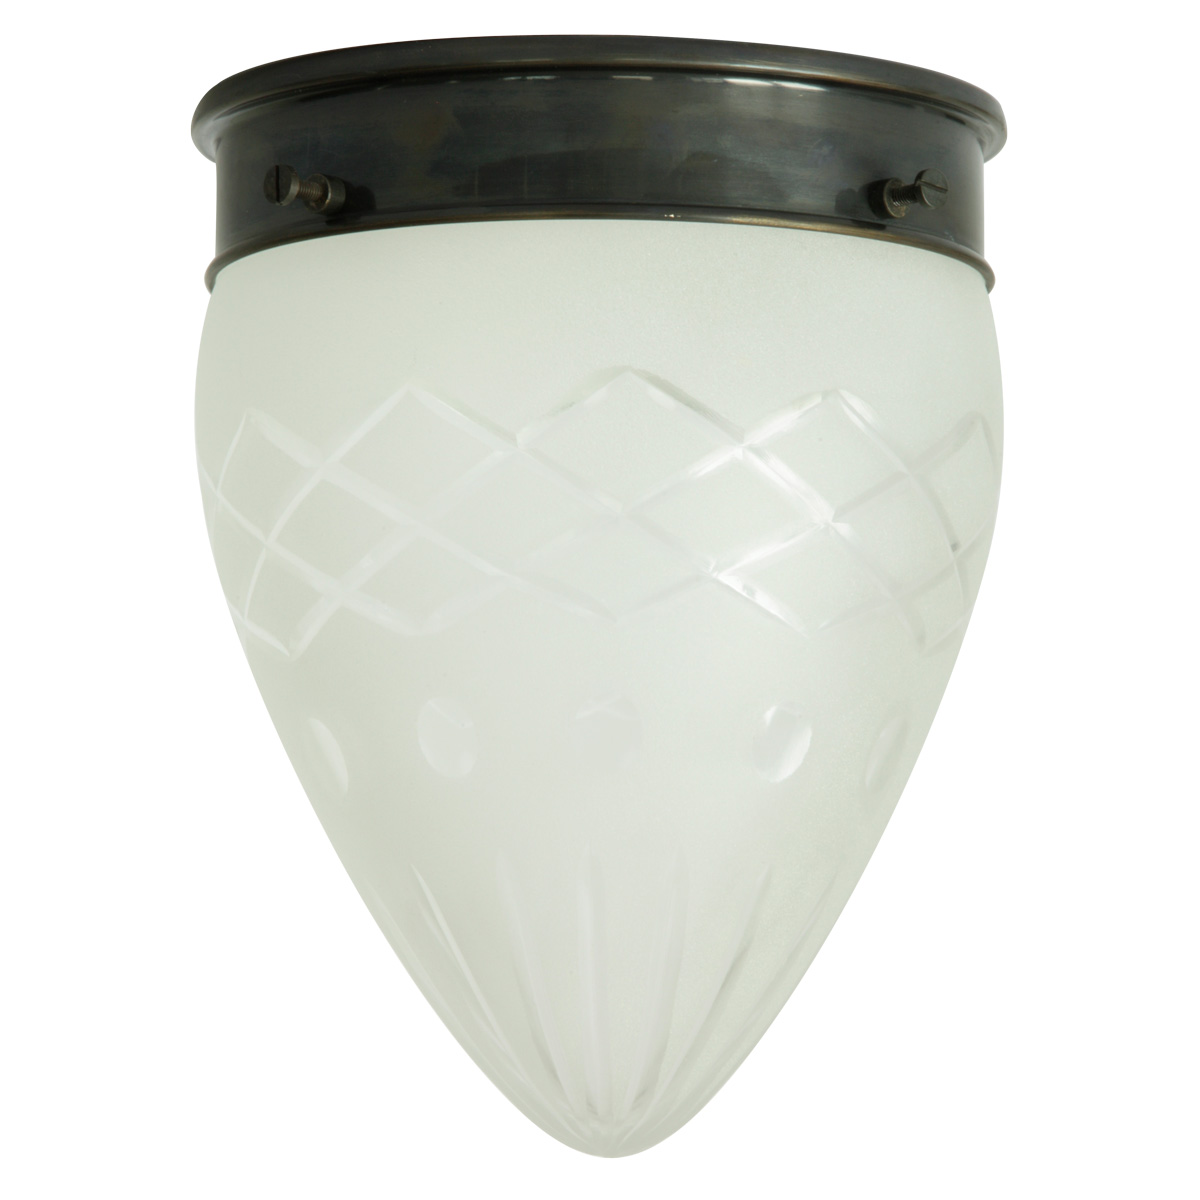 Deckenlampe mit mehrfach geschliffenem Spitzglas Ø 16 cm: Spitze Deckenleuchte, abgebildet mit Deckenteil in Messing dunkel patiniert (brüniert)